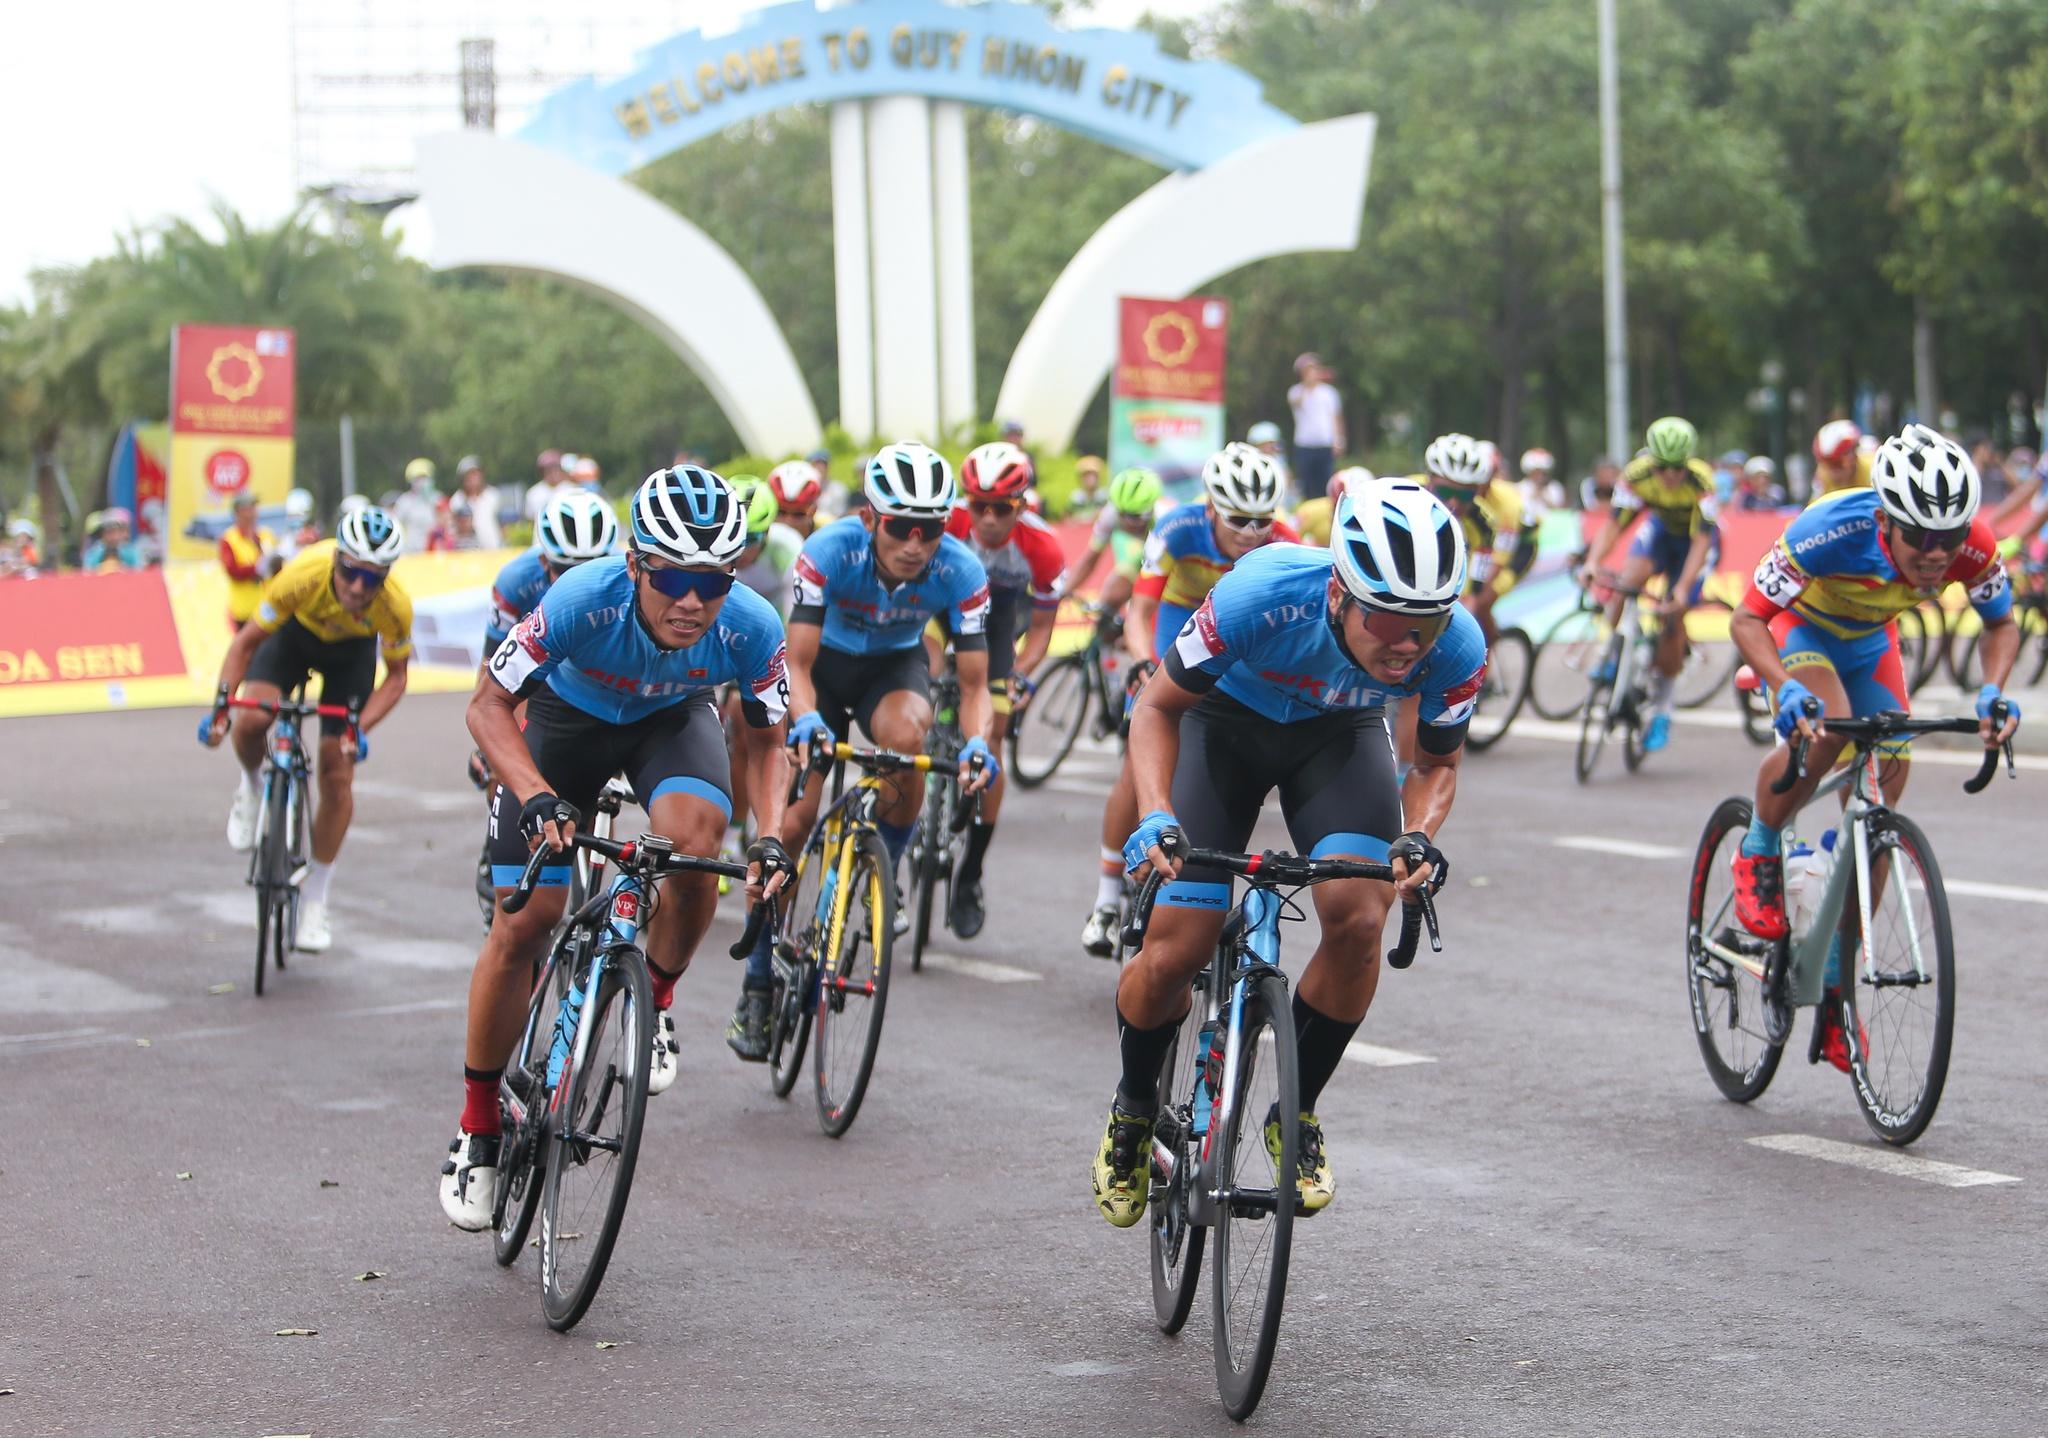 Chặng cuối giải xe đạp VTV kết thúc tốt đẹp tại Bình Định - ảnh 6